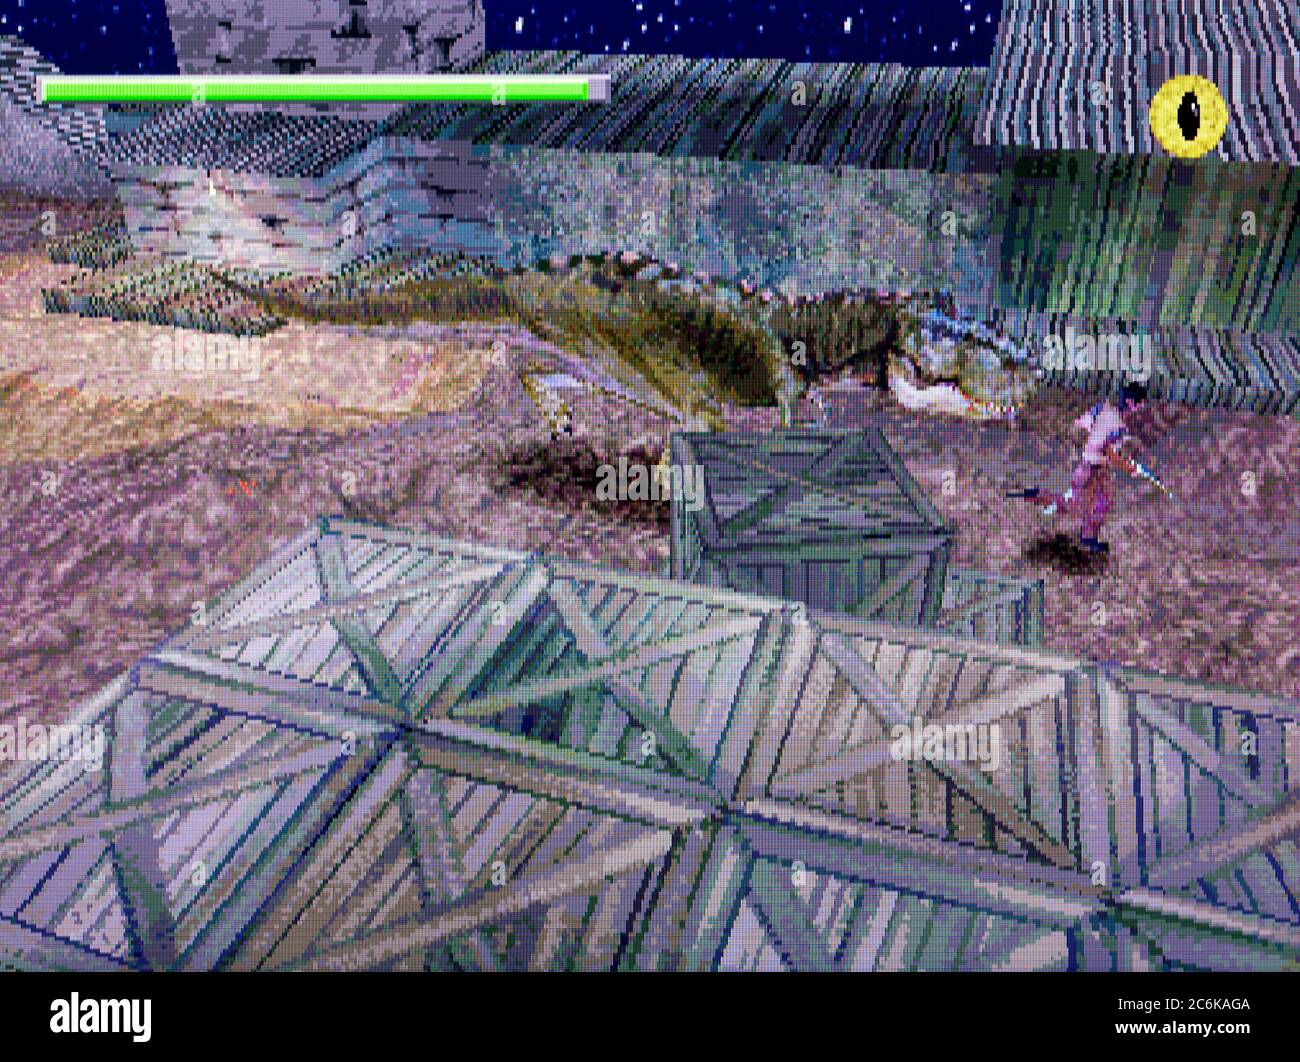 The Lost World Jurassic Park de PlayStation 1